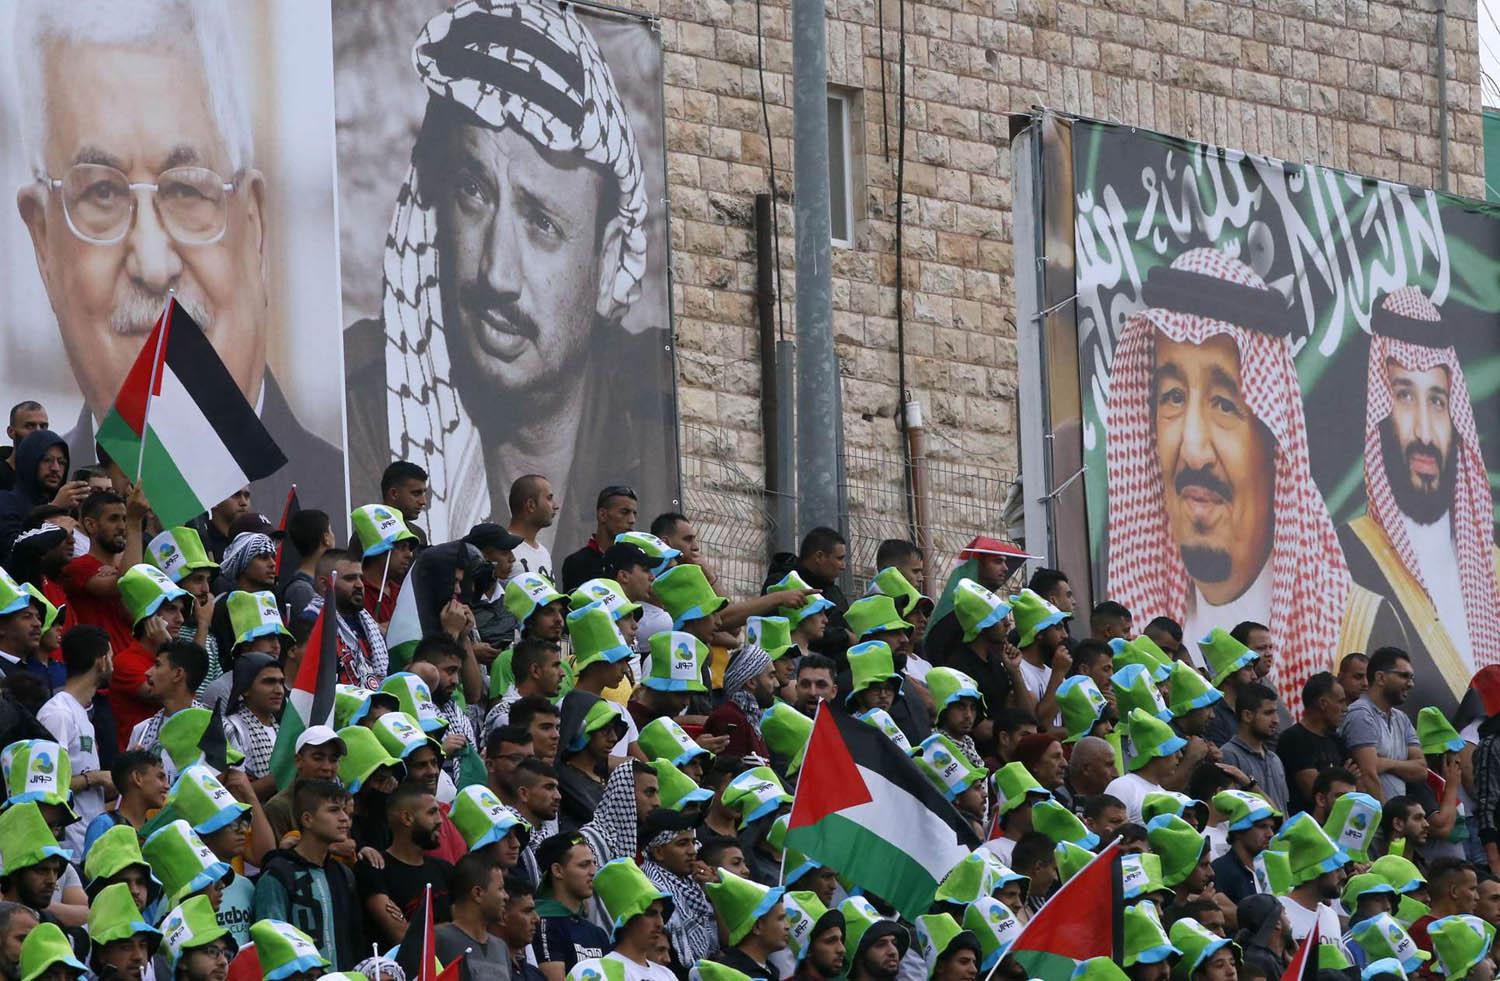 فلسطينيون يحضرون مباراة بين الفريق السعودي والفريق الفلسطيني في الرم في الضفة الغربية